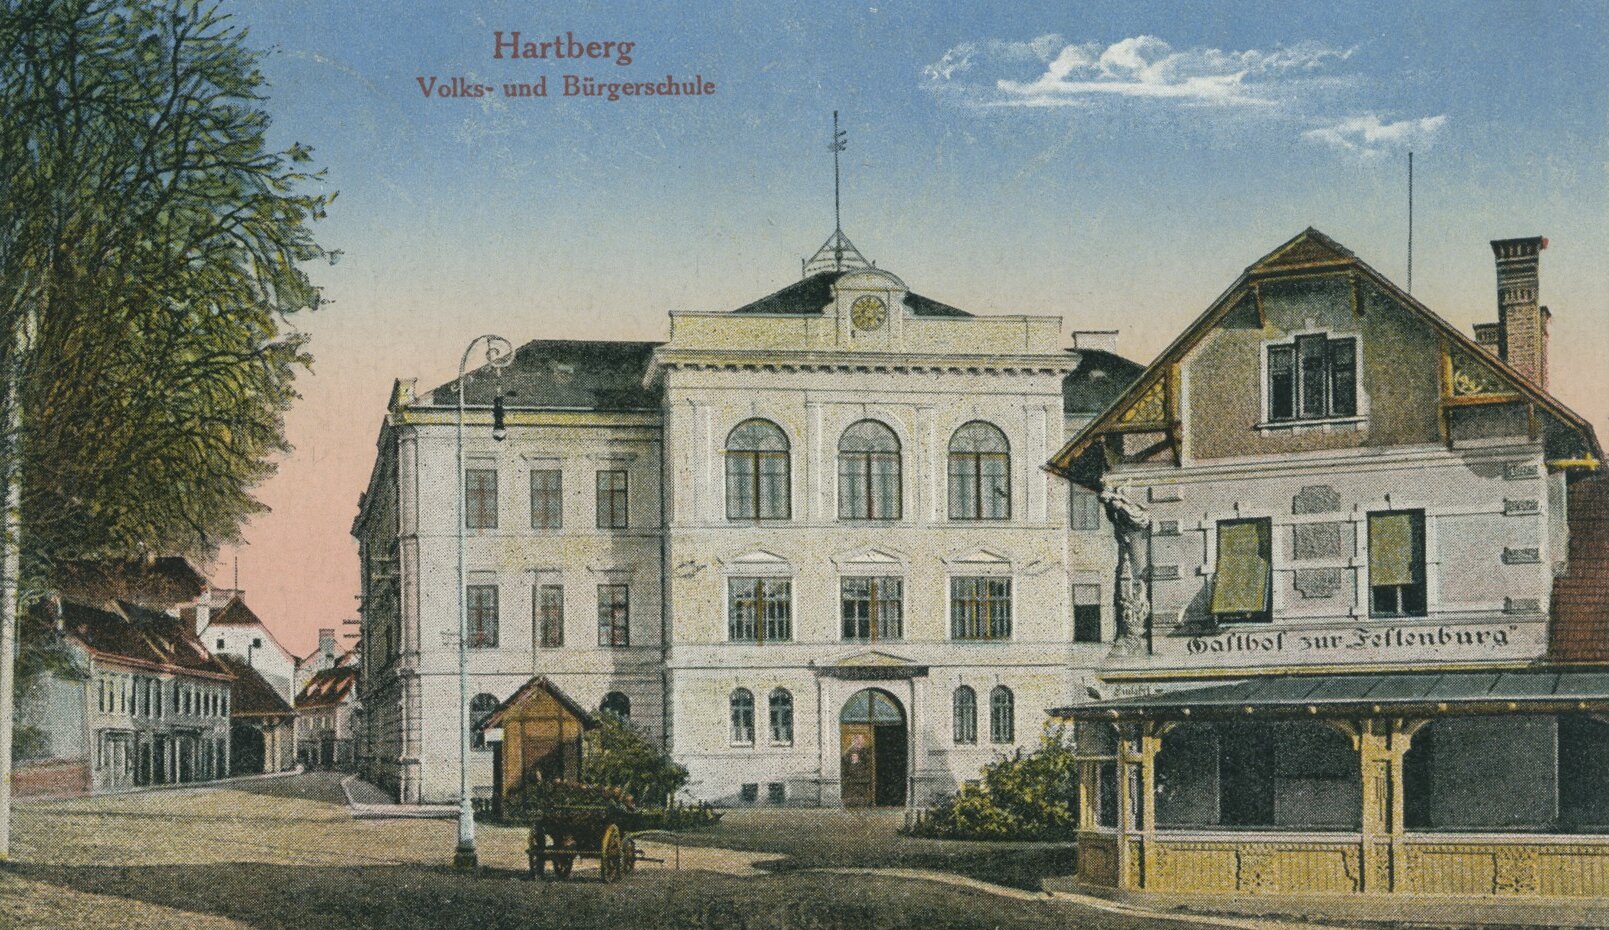 Hartberg, Volks- und Bürgerschule